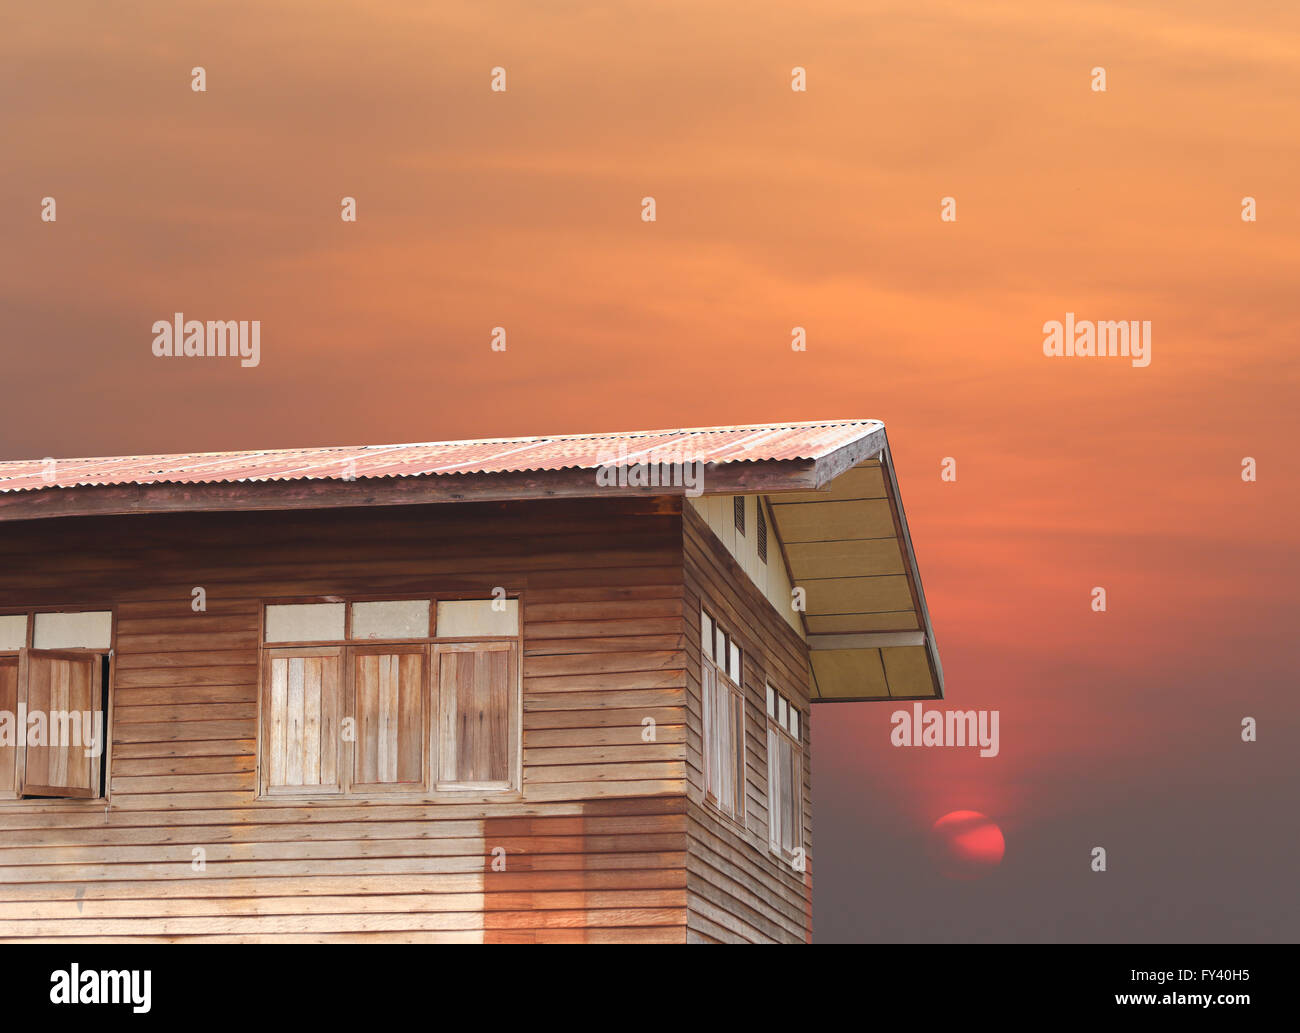 Antigua casa de madera estilo arquitectónico de Tailandia, el diseño y la puesta de sol por la tarde. Foto de stock